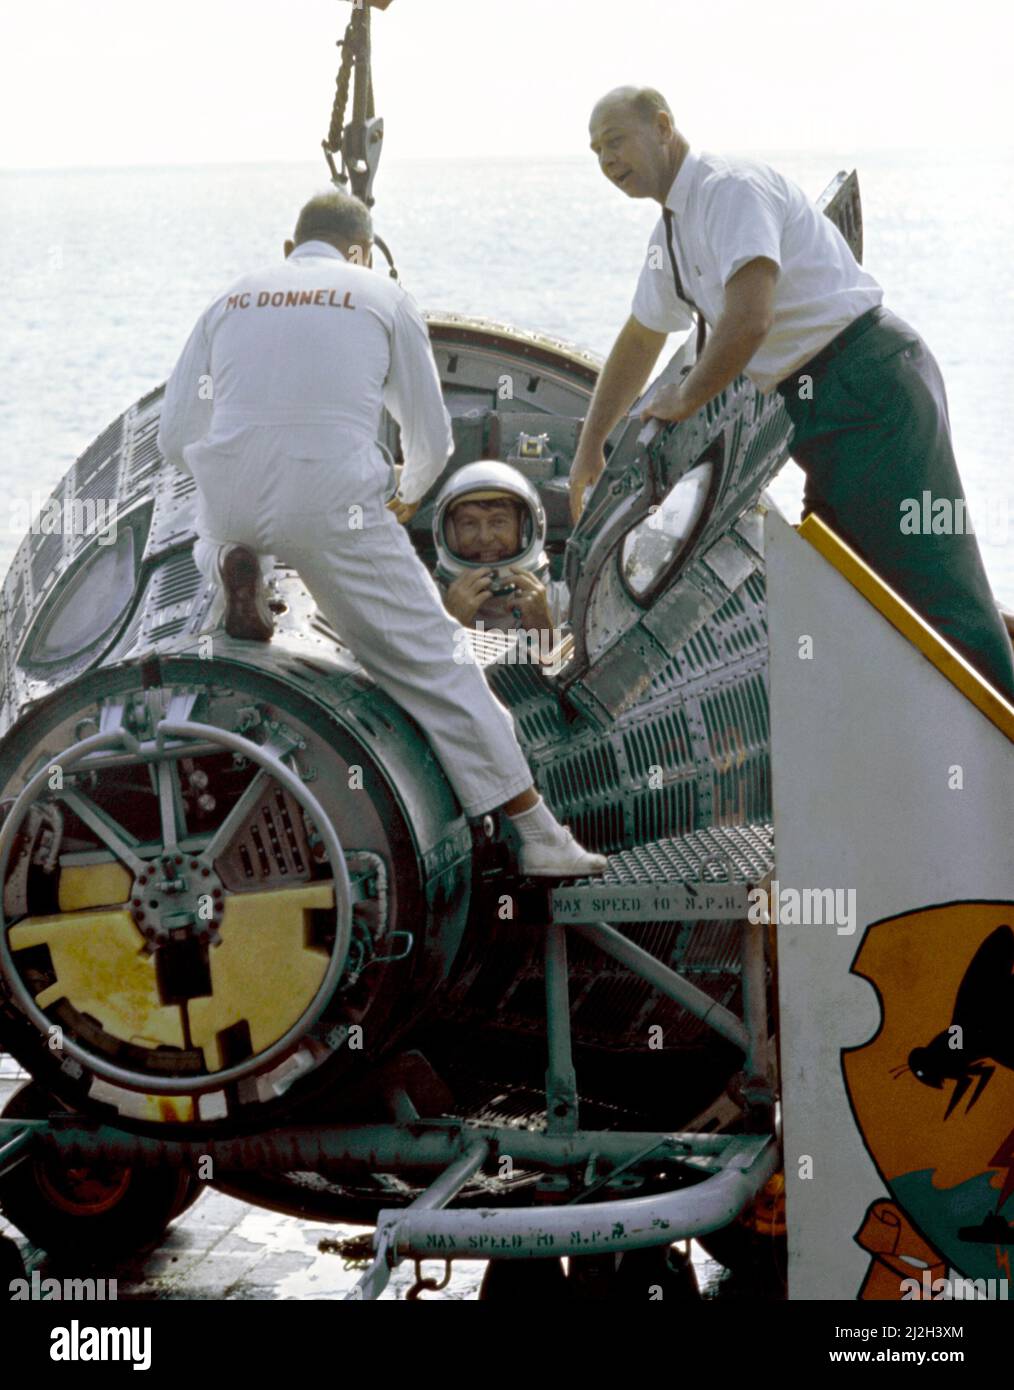 L'astronauta Walter Schirra nel veicolo spaziale Gemini VI mentre lui e l'astronauta Thomas Stafford (non in vista) arrivano a bordo della portaerei U.S.S. WASP dopo il loro smashdown. Foto Stock